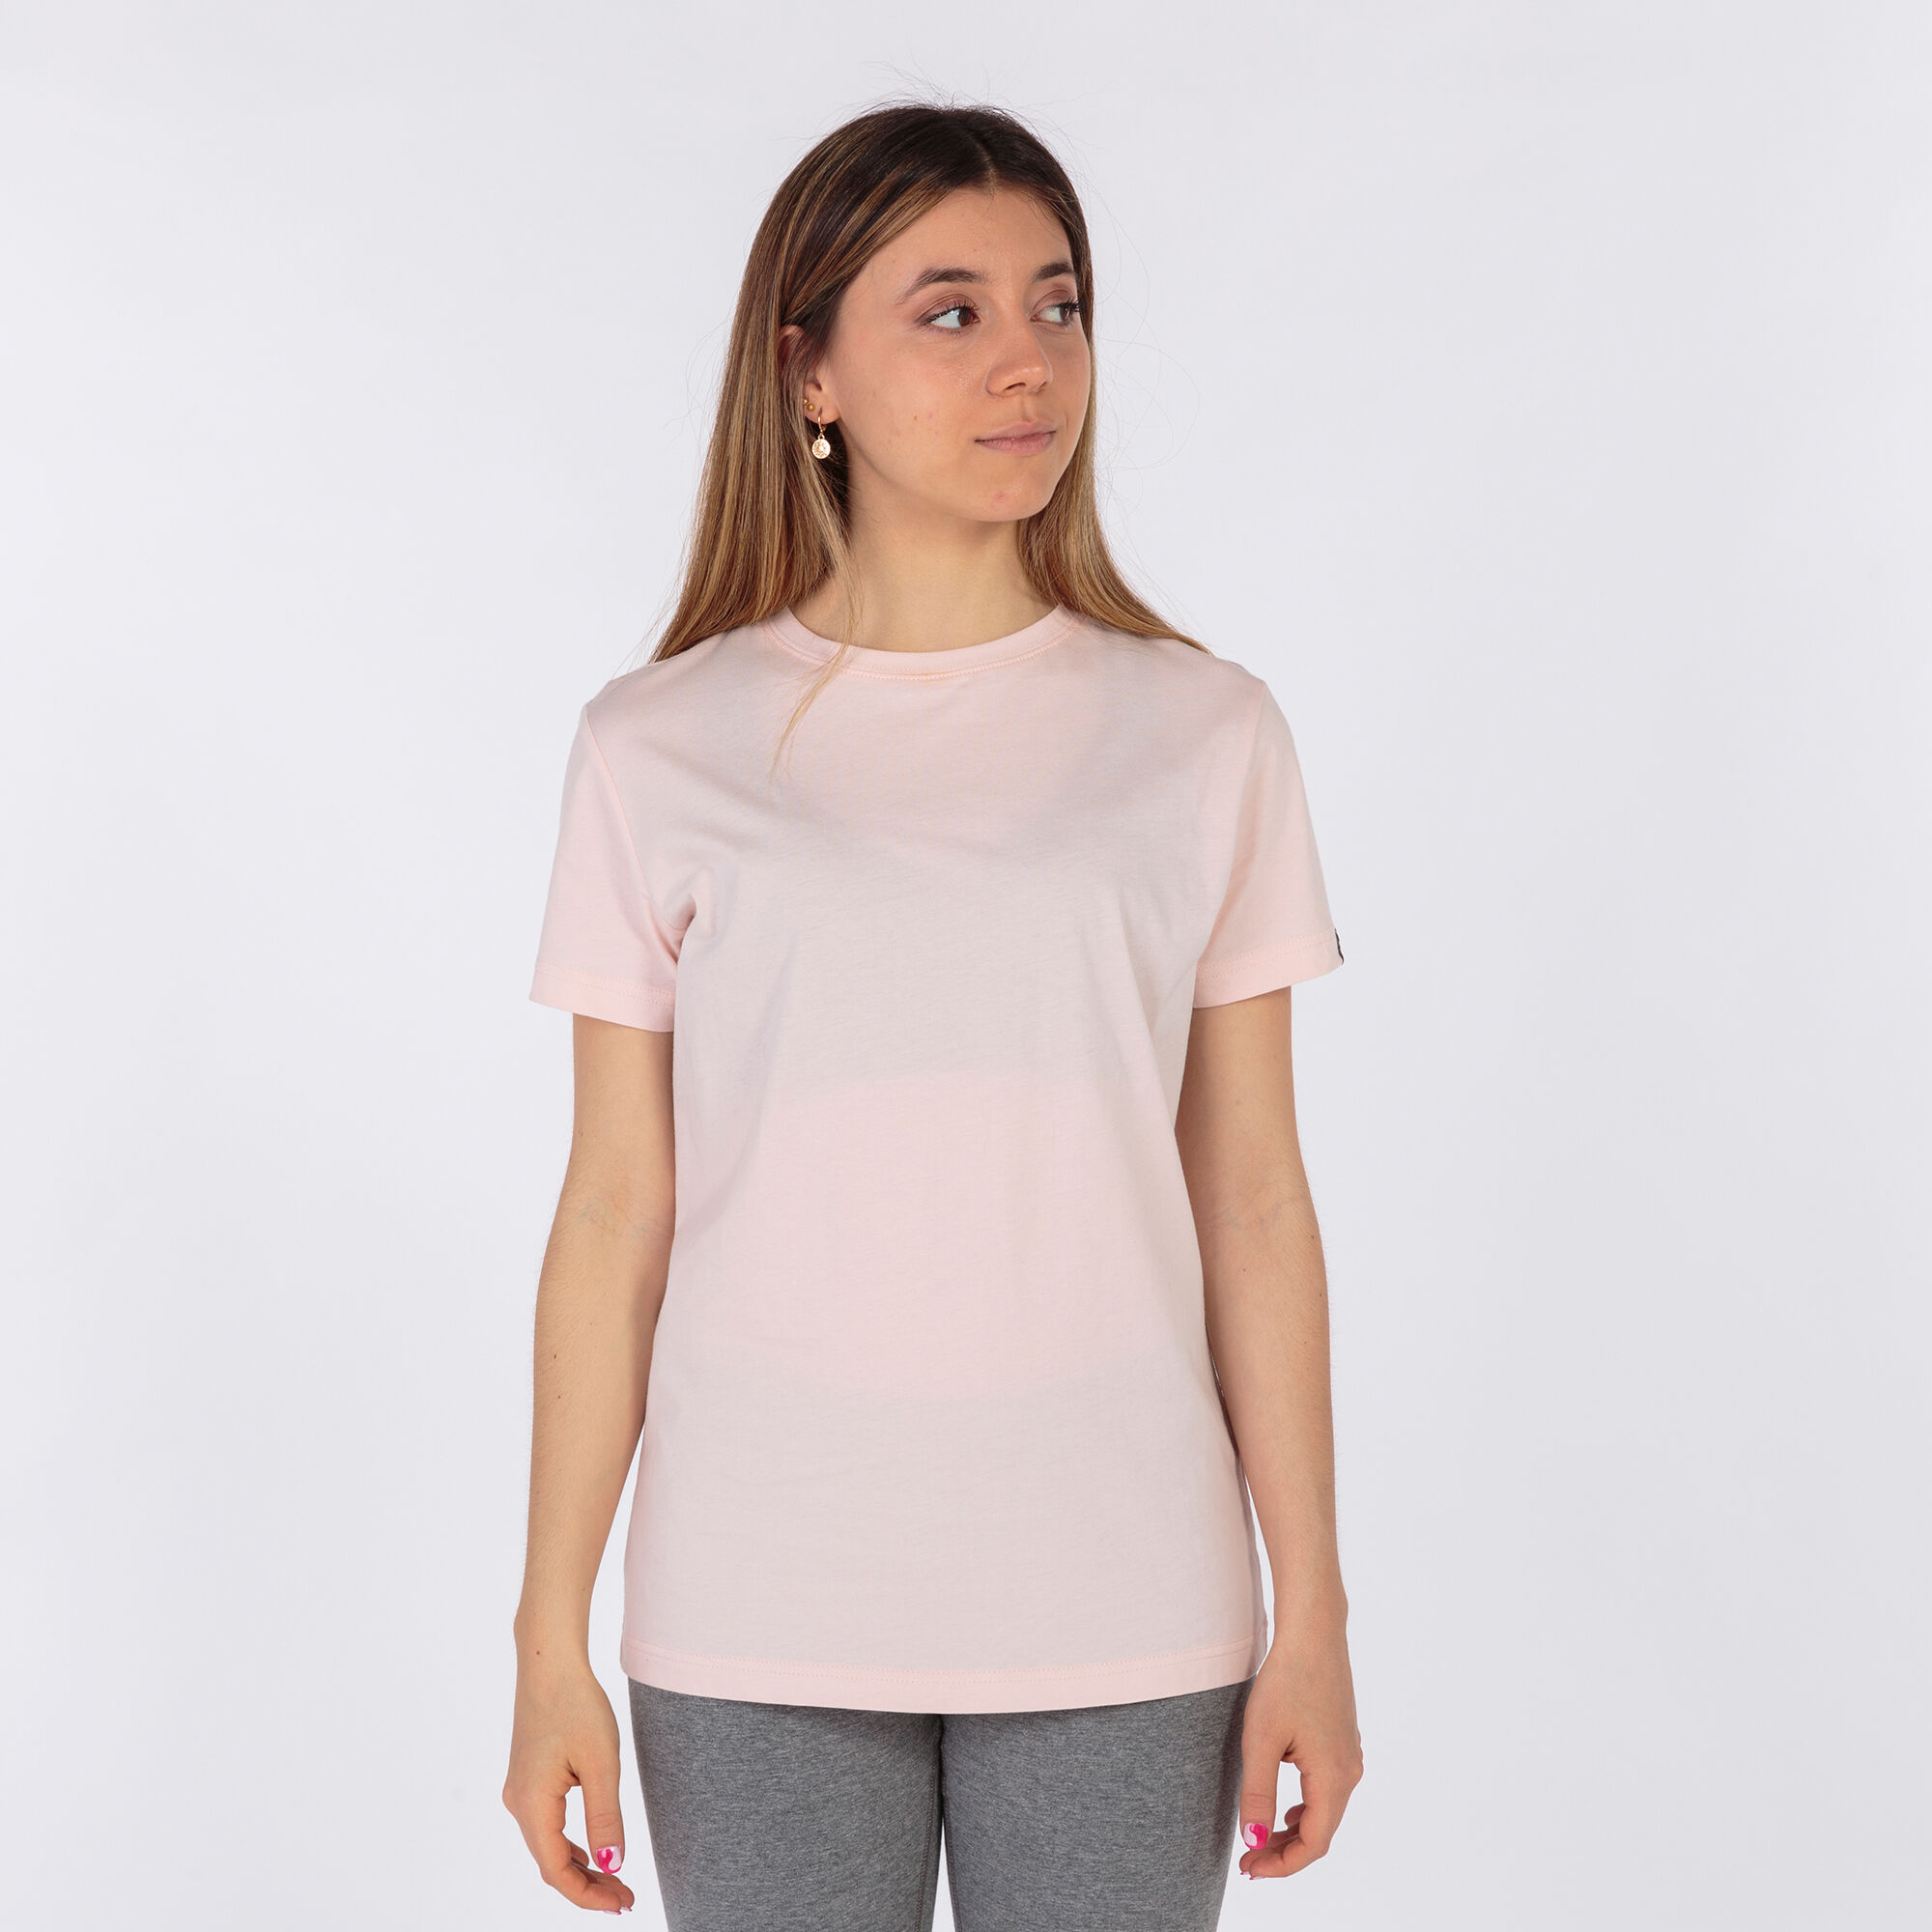 Camiseta manga corta mujer Desert rosa claro